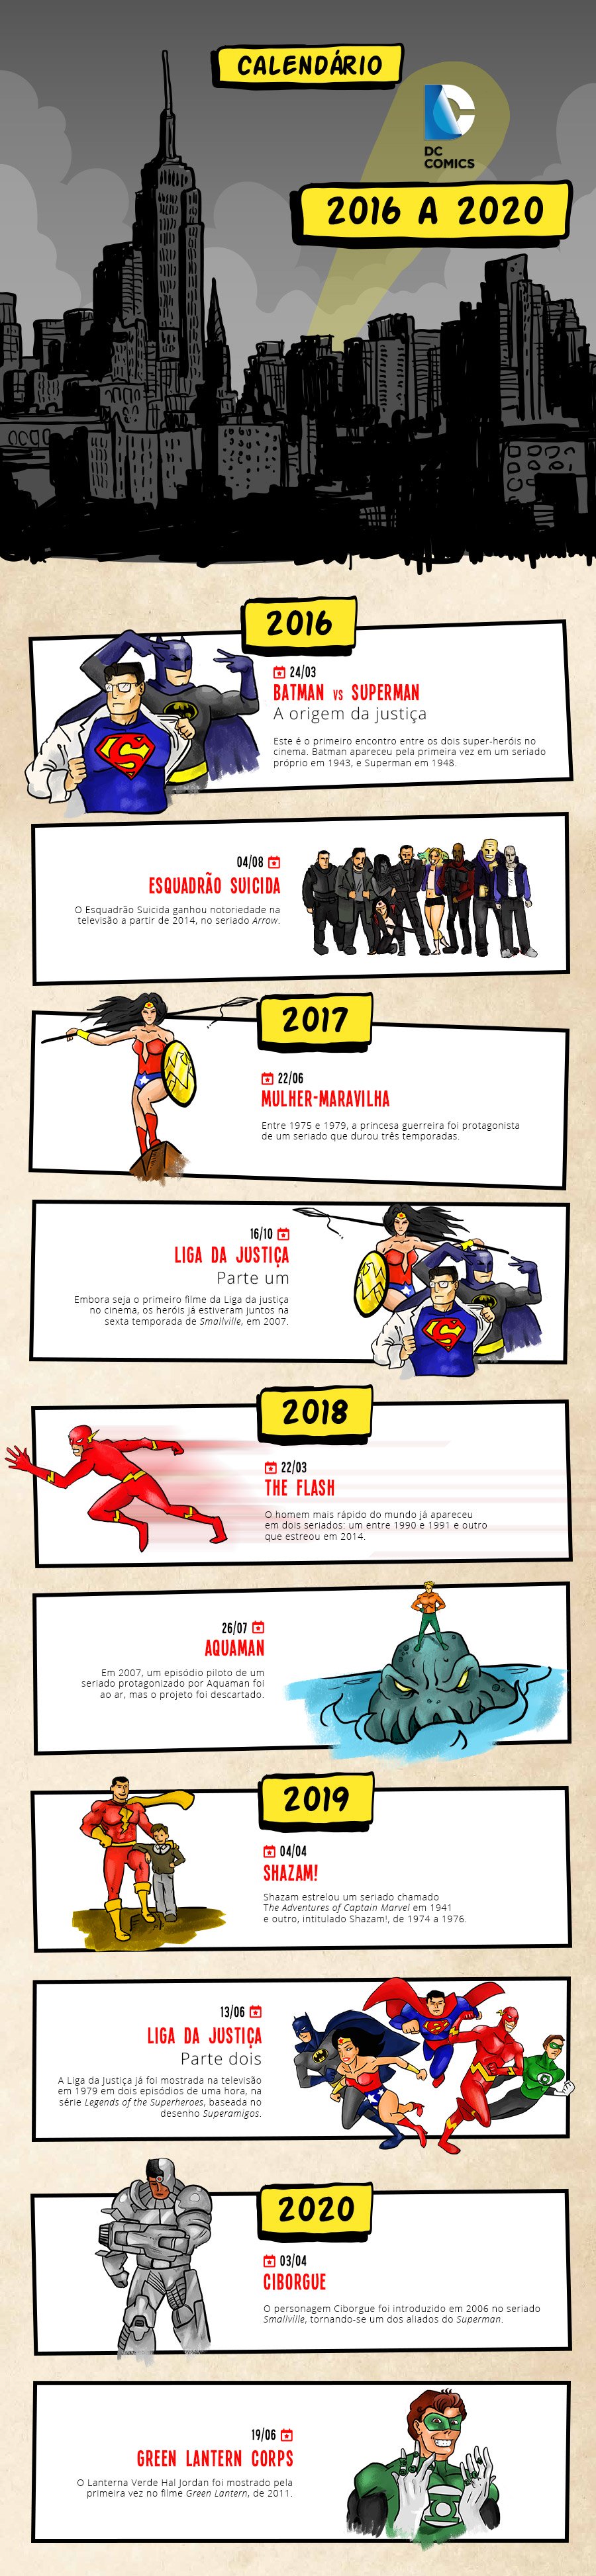 Infográfico-calendário-filmes-da-DC-2016-2020